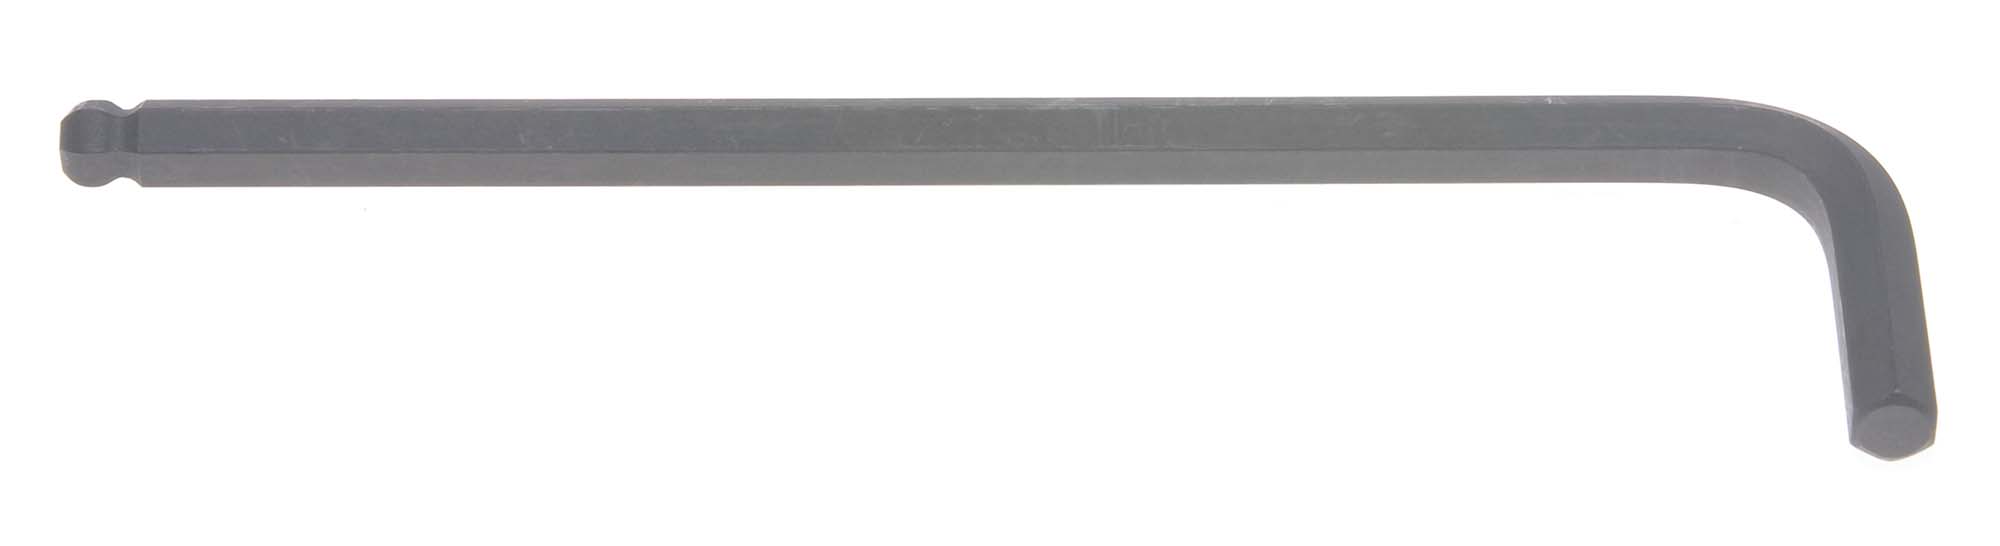 Bondhus 10974 9mm Balldriver L-Wrench Hex Key